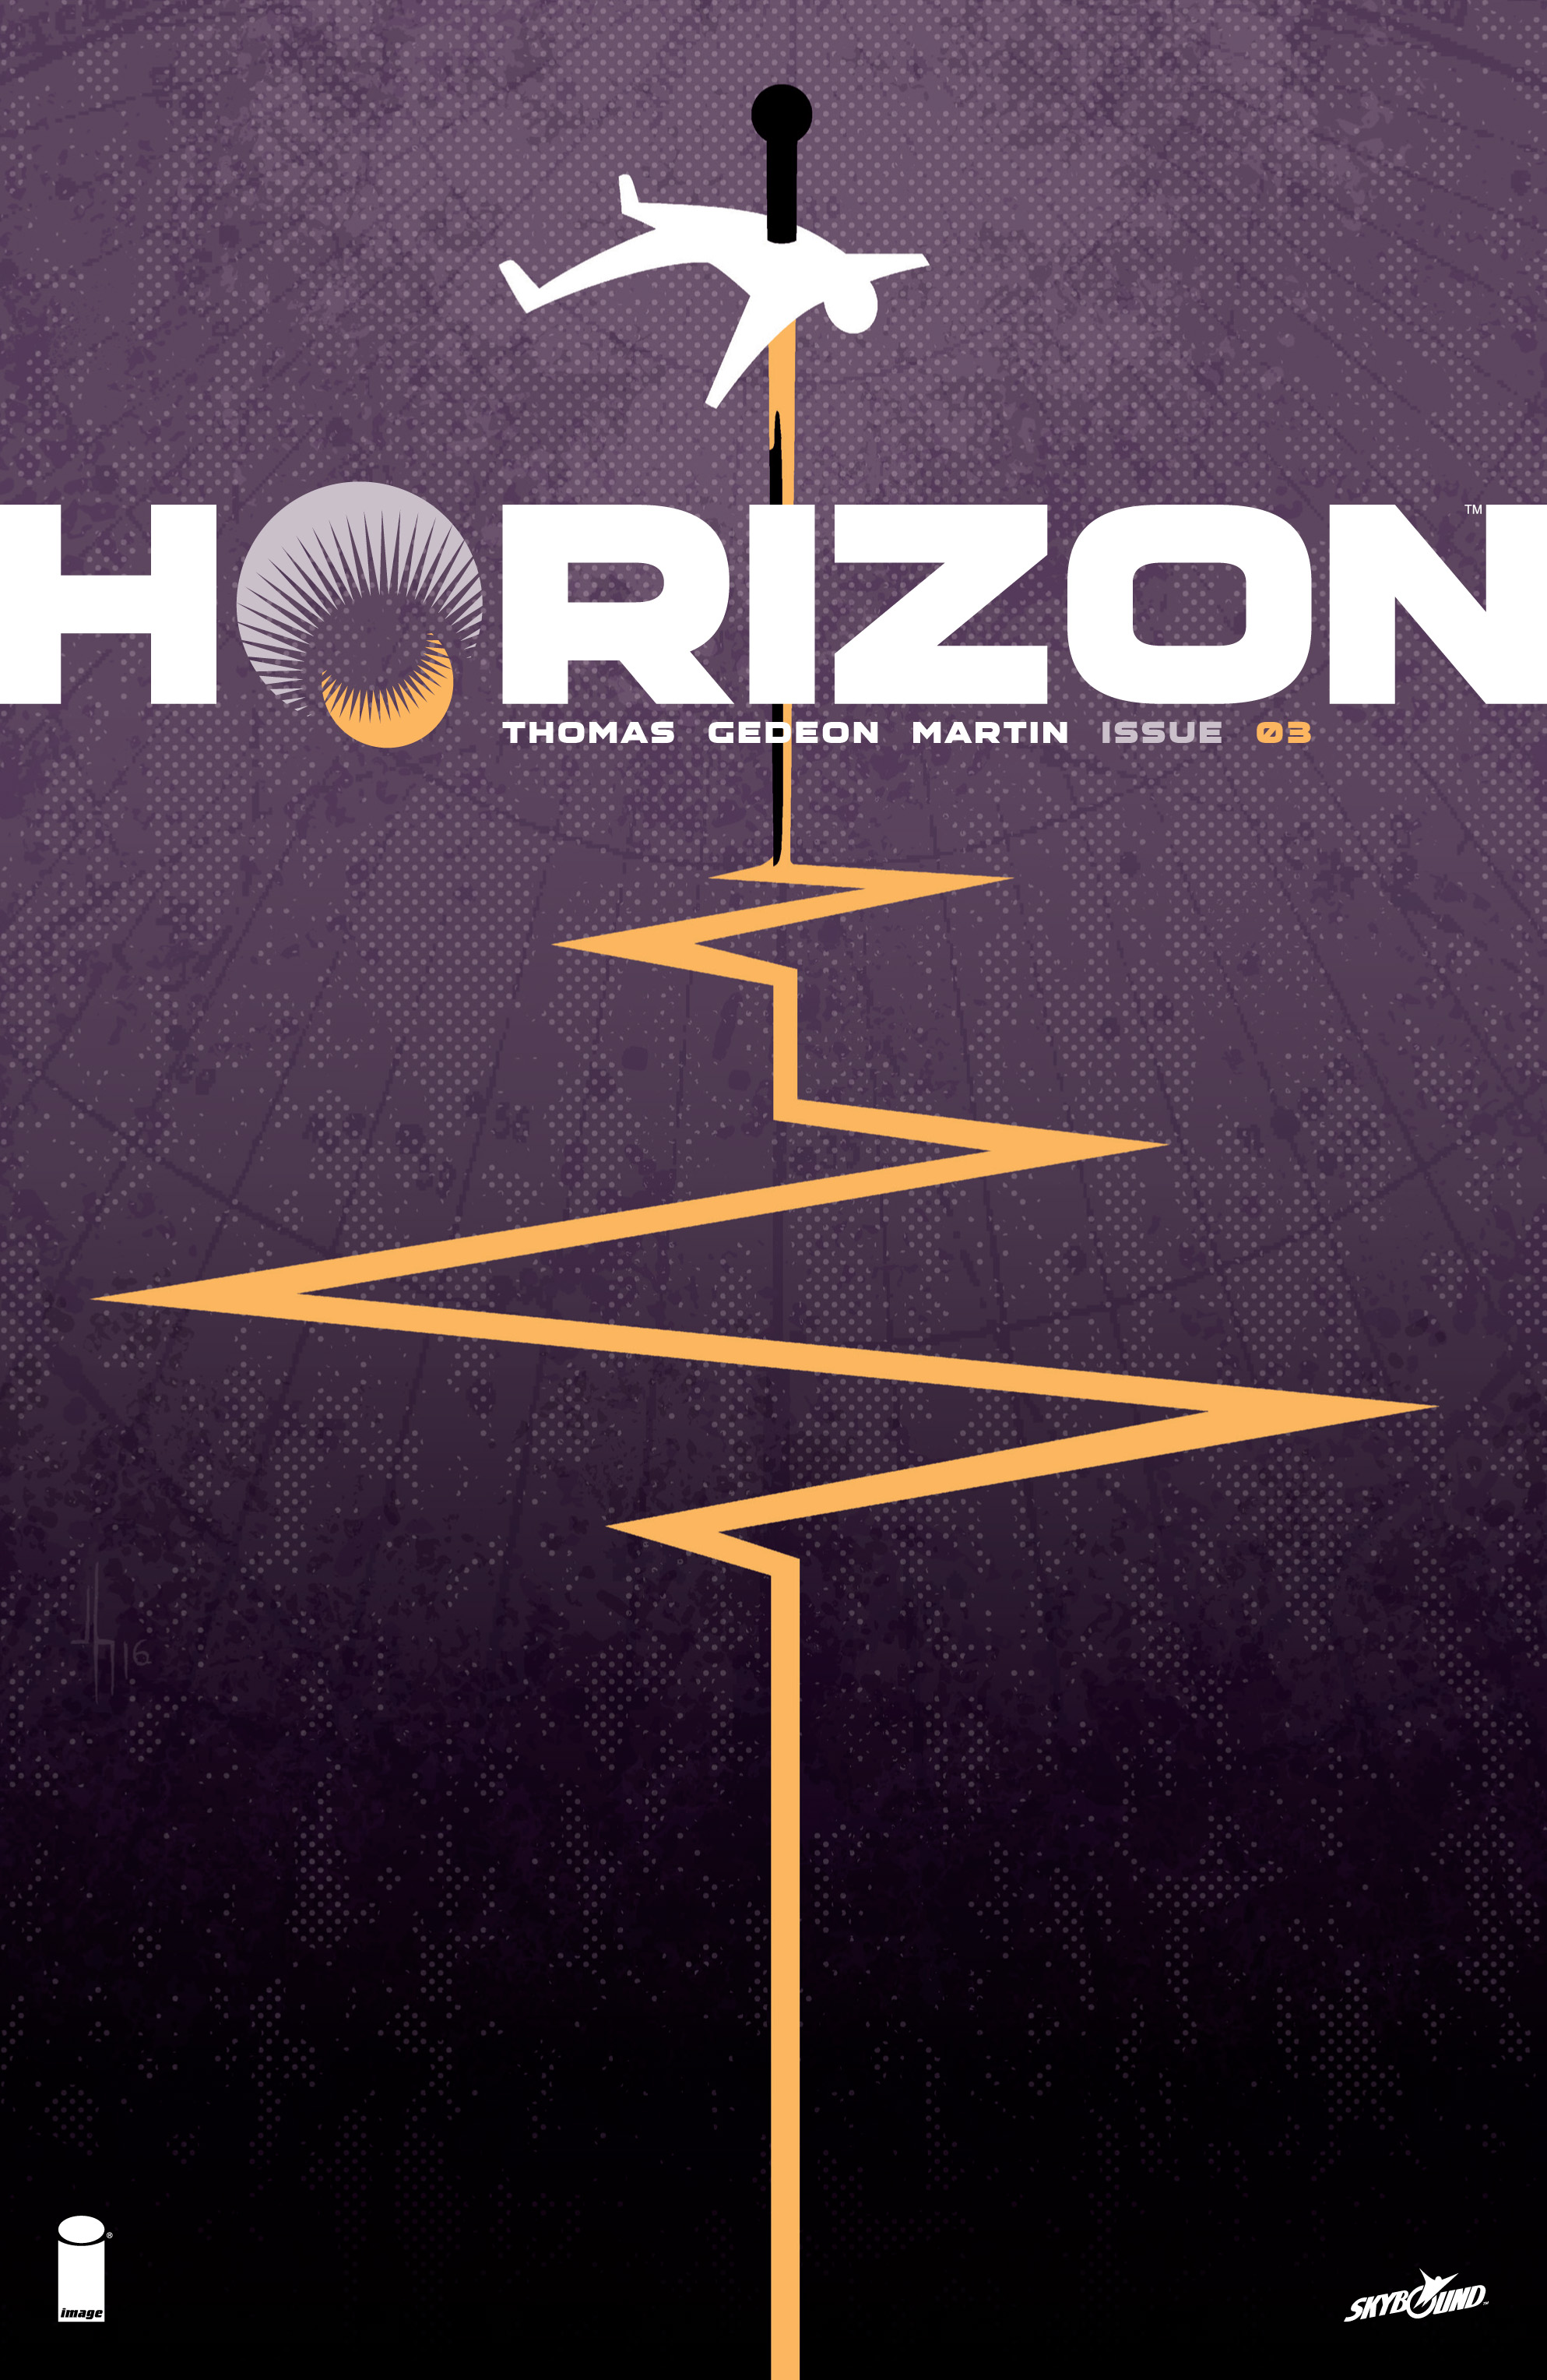 Read online Horizon comic -  Issue #3 - 1